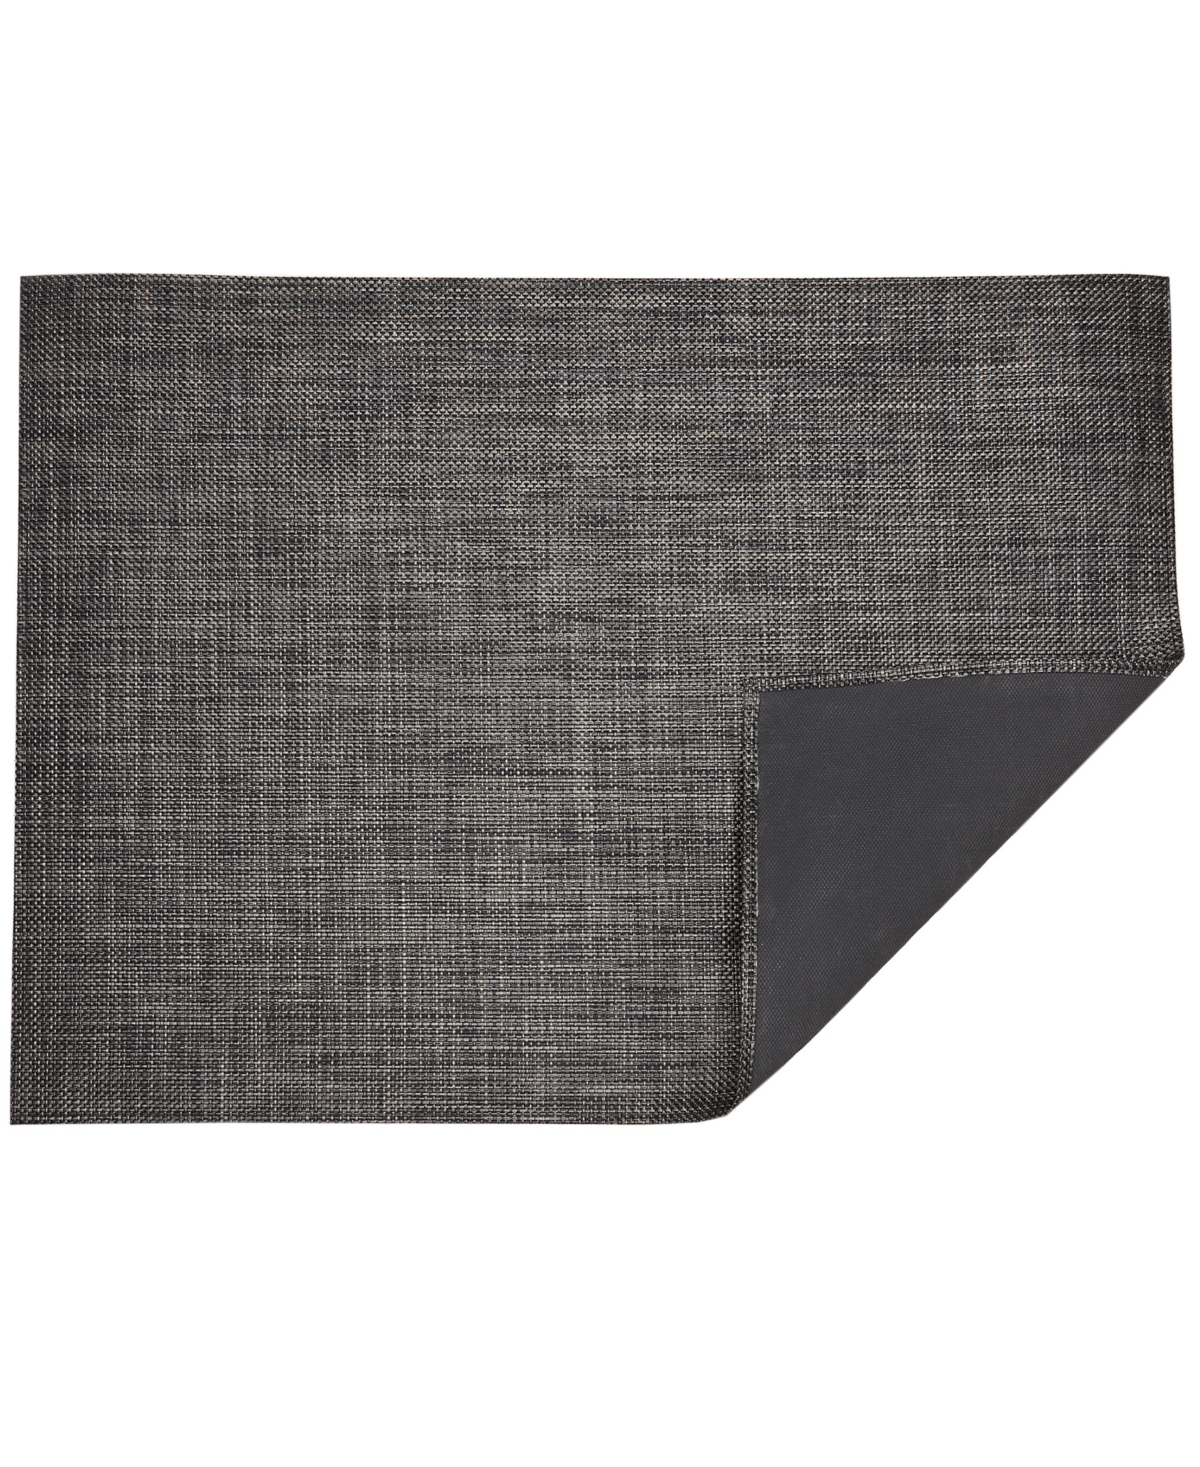 Basketweave Floormat, 72" x 106" - Carbon